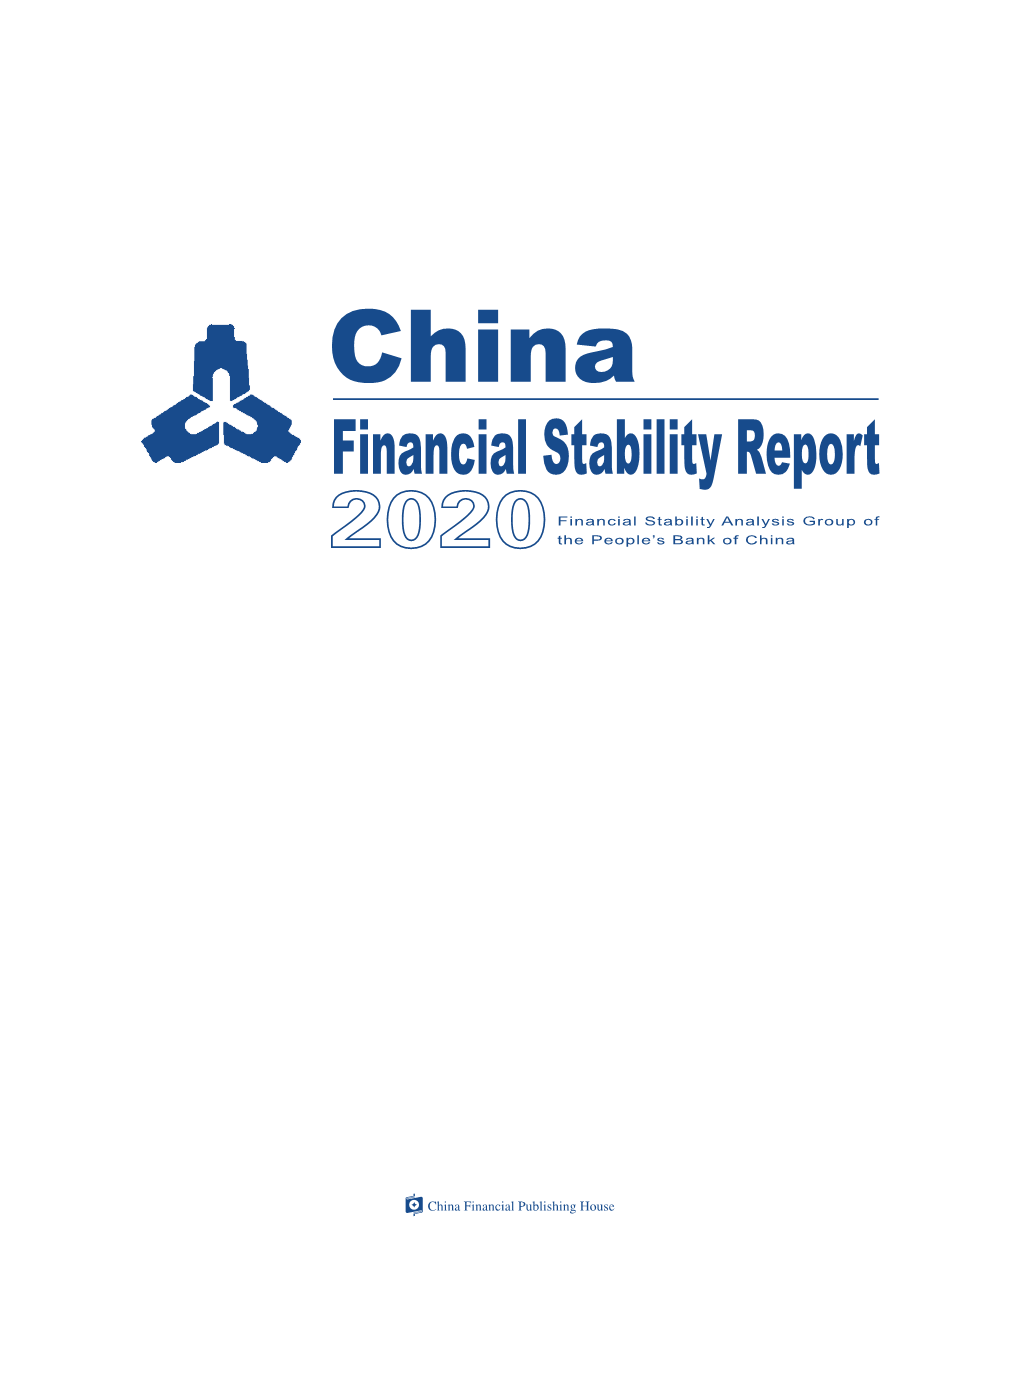 China Financial Stability Report 2020 LIANG Tao ZOU Jiayi PAN Gongsheng Gongsheng PAN LI Wei LUO Rui SUN Guofeng Ling TAO WEN Xinxiang ZHU Jun